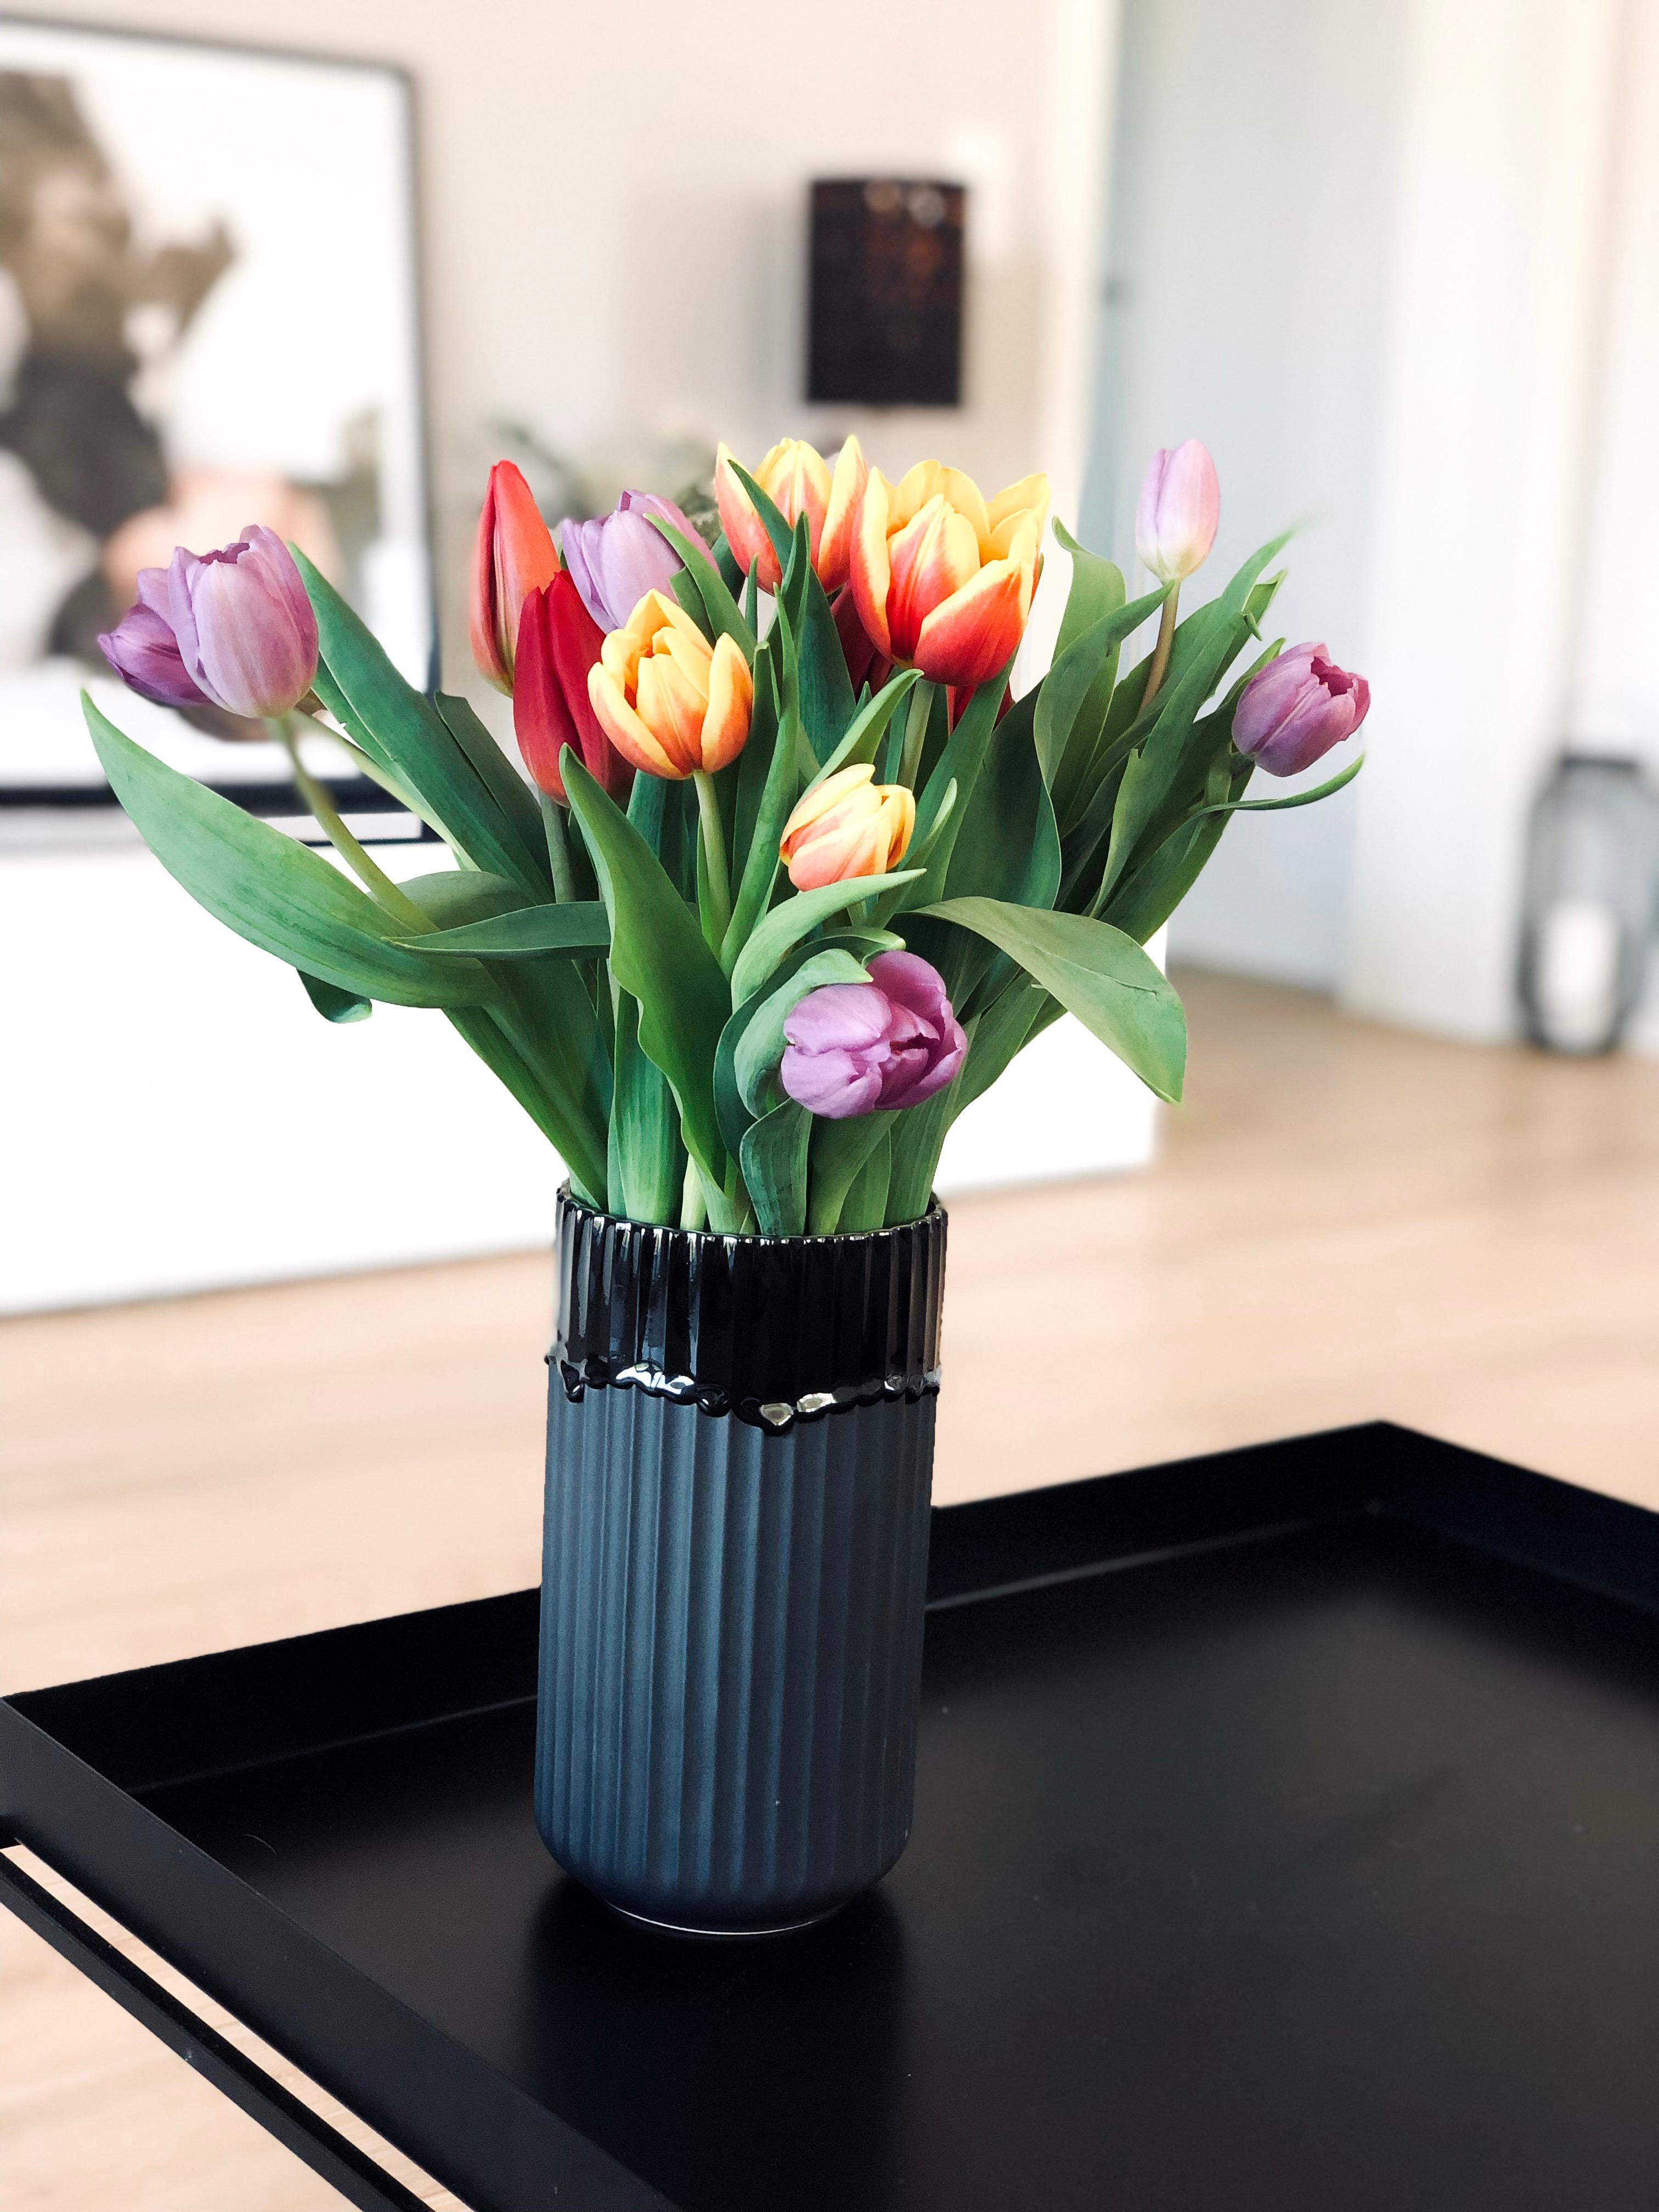 Tulpen- und Vasenliebe 💚🌷
#freshflowerfriday #livingchallenge #tulips